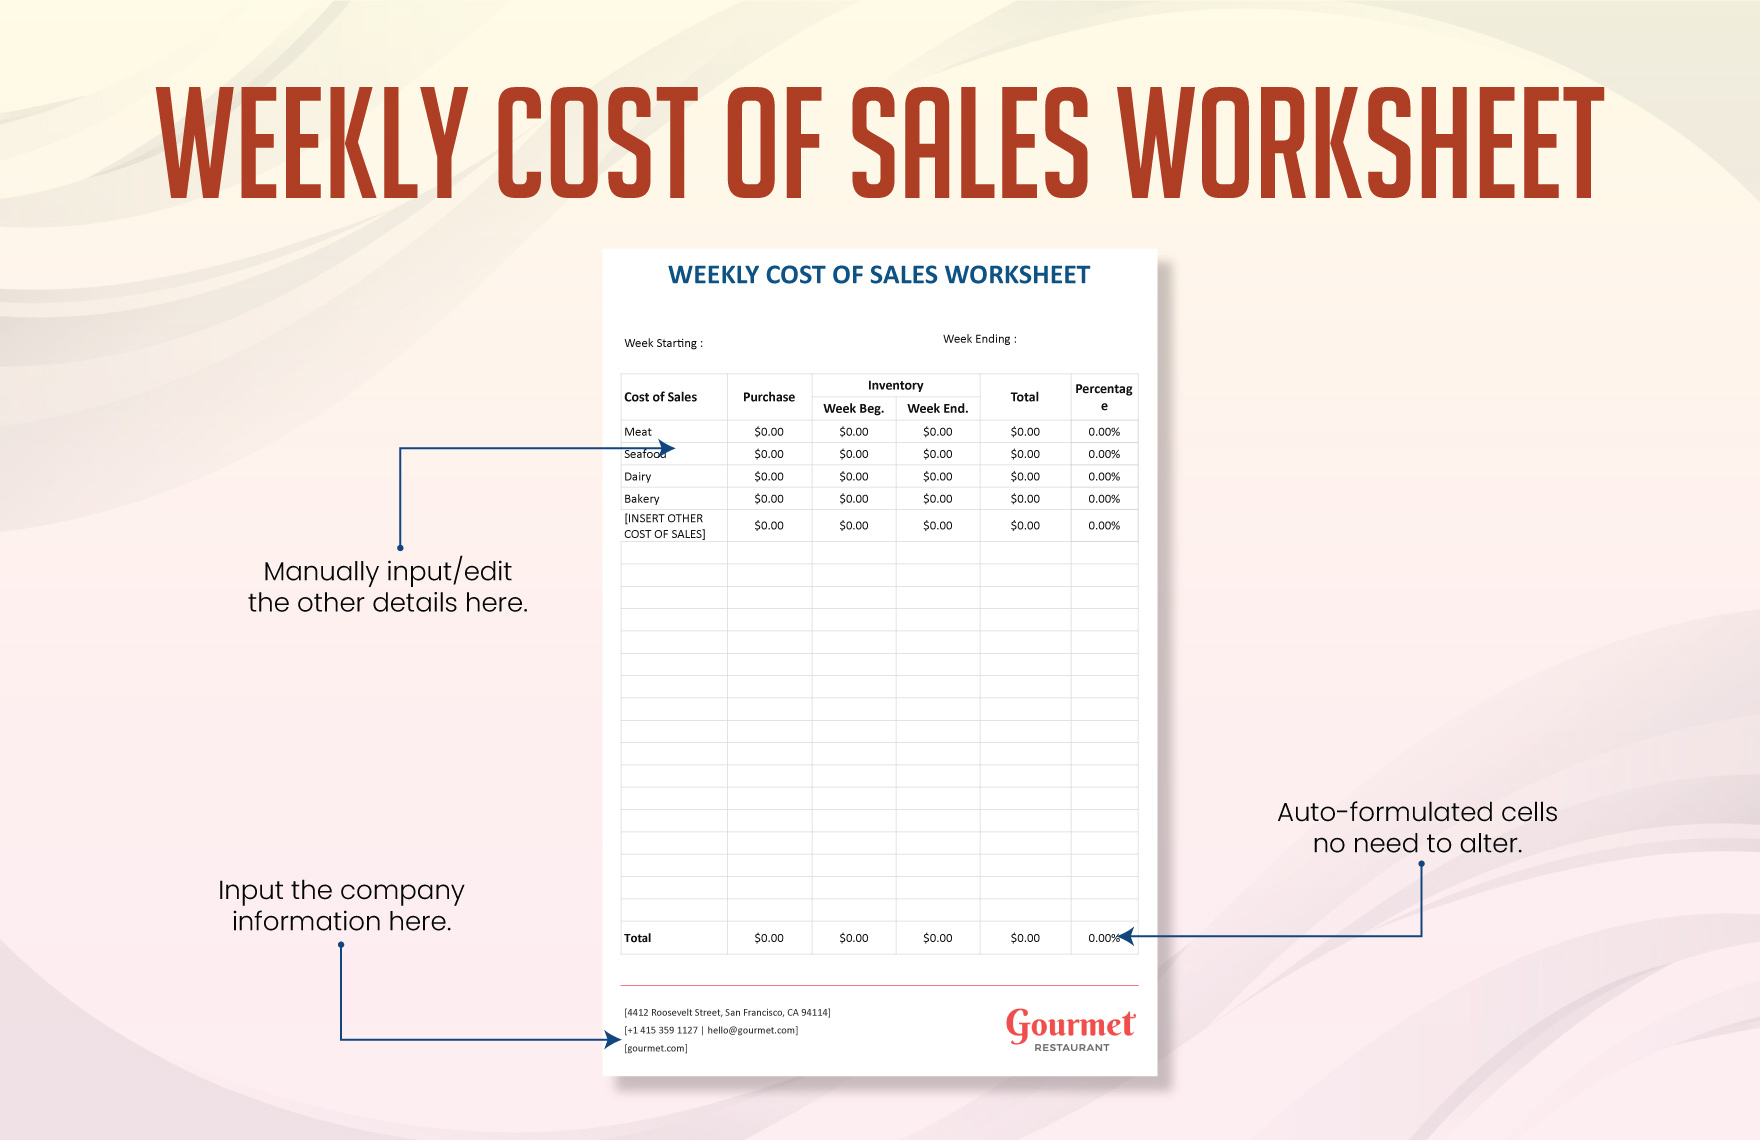 Weekly Cost of Sales Worksheet Template